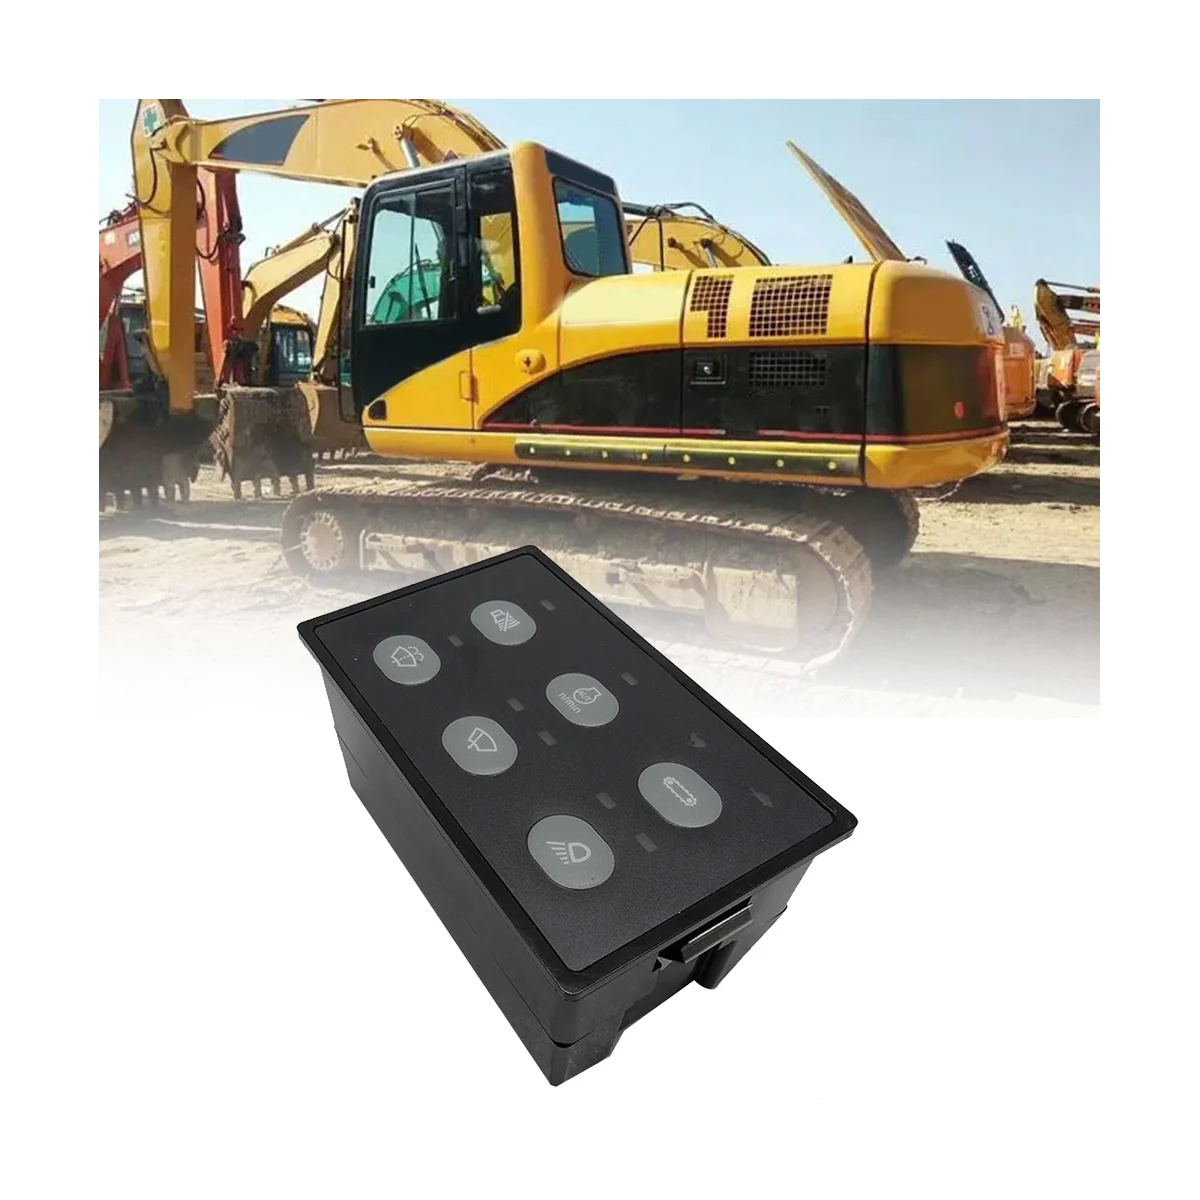 163-6701 Excavator Headlight Wiper Controller Control Panel for Excavator Caterpillar CAT320C E312C E311C TOSD-16B-025